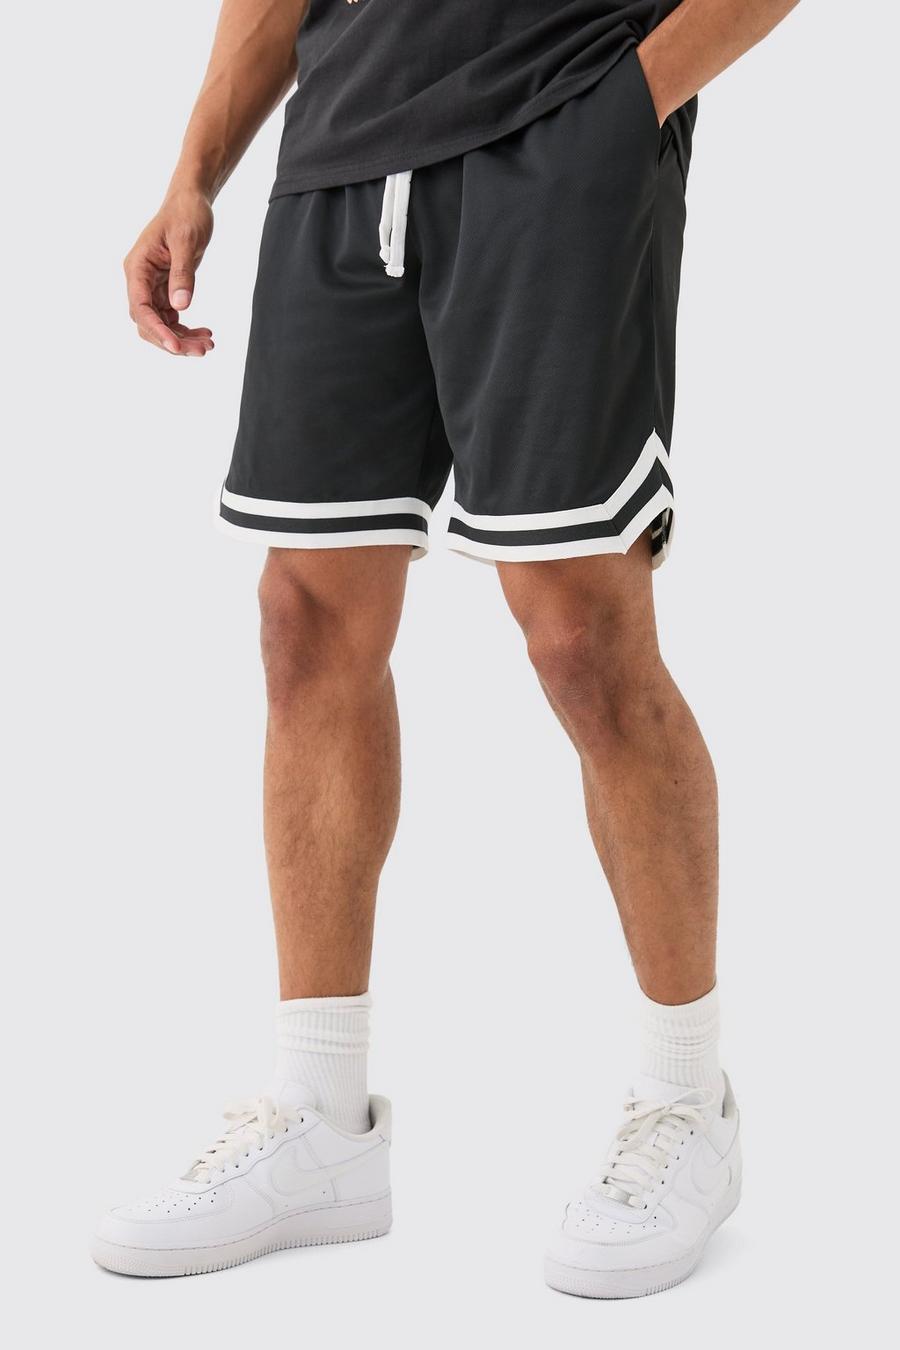 Black Middellange Mesh Basketbal Shorts image number 1